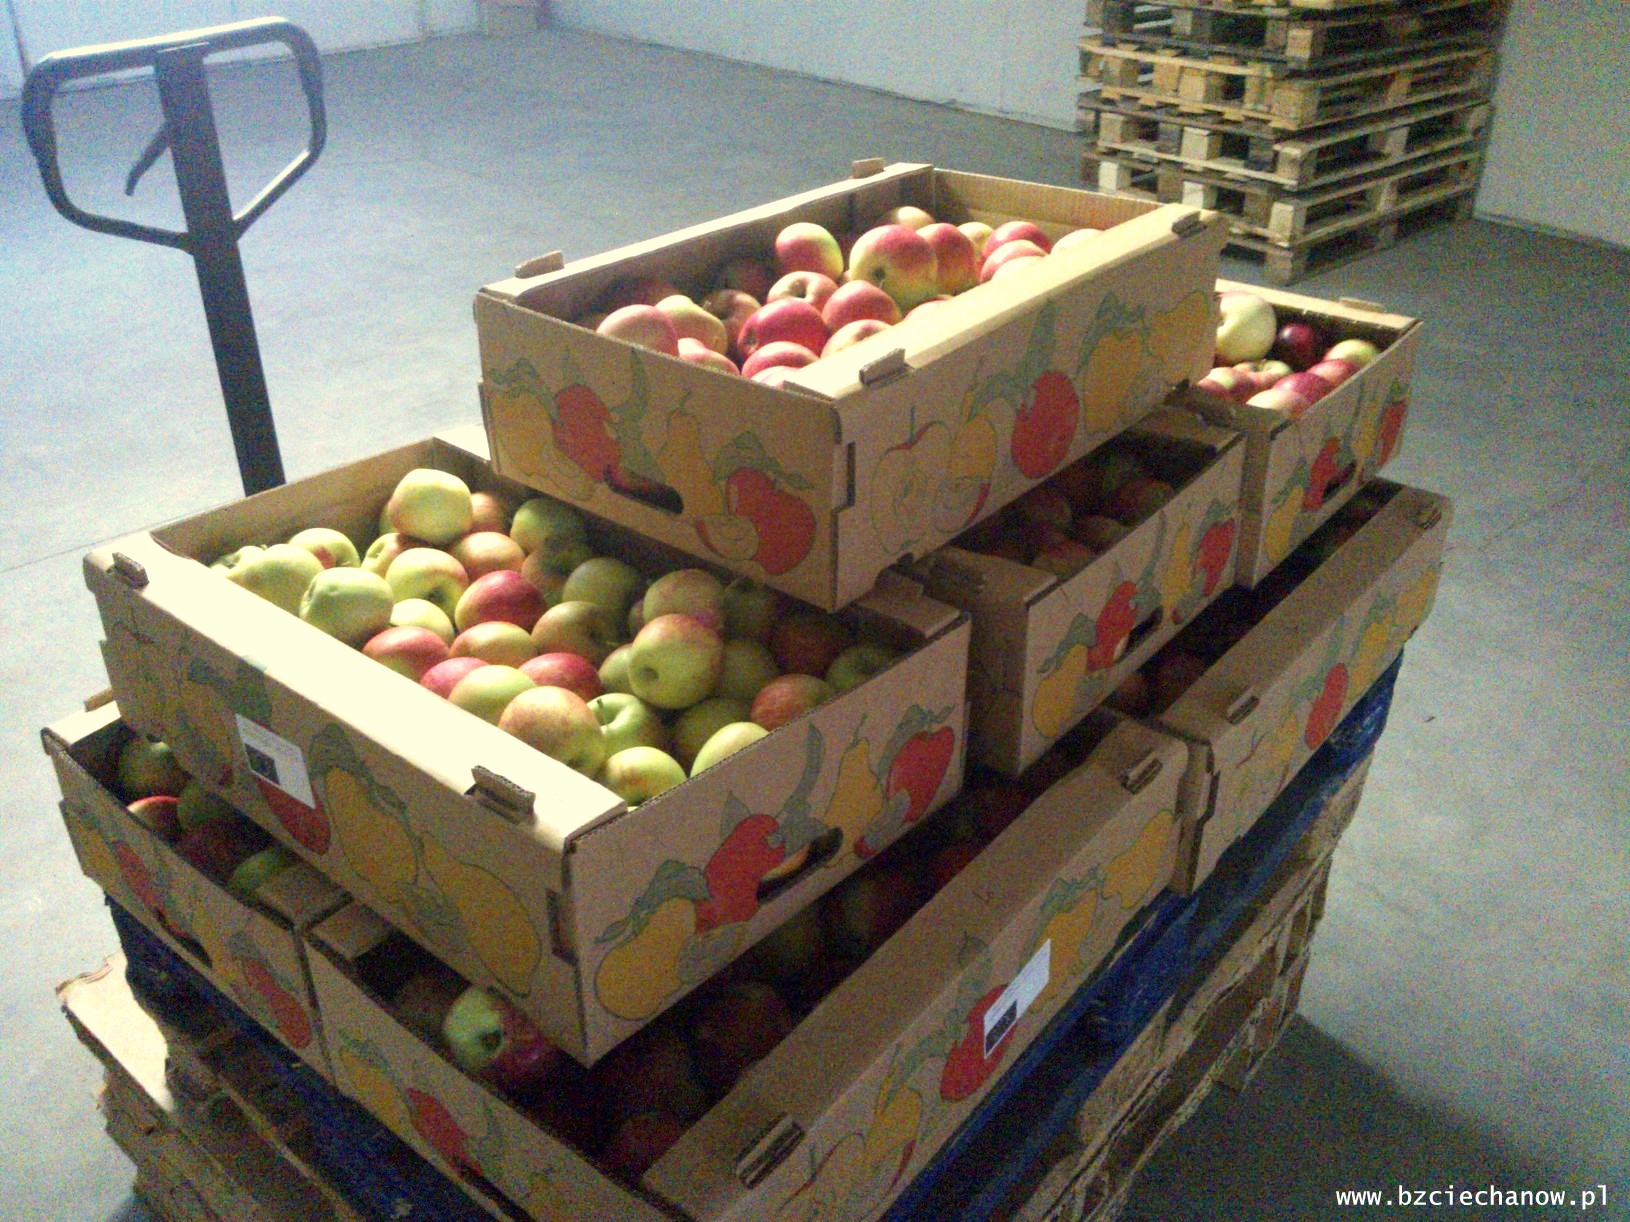 19 ton jabłek z banku żywności trafiło do redzkich szkół i do MOPS